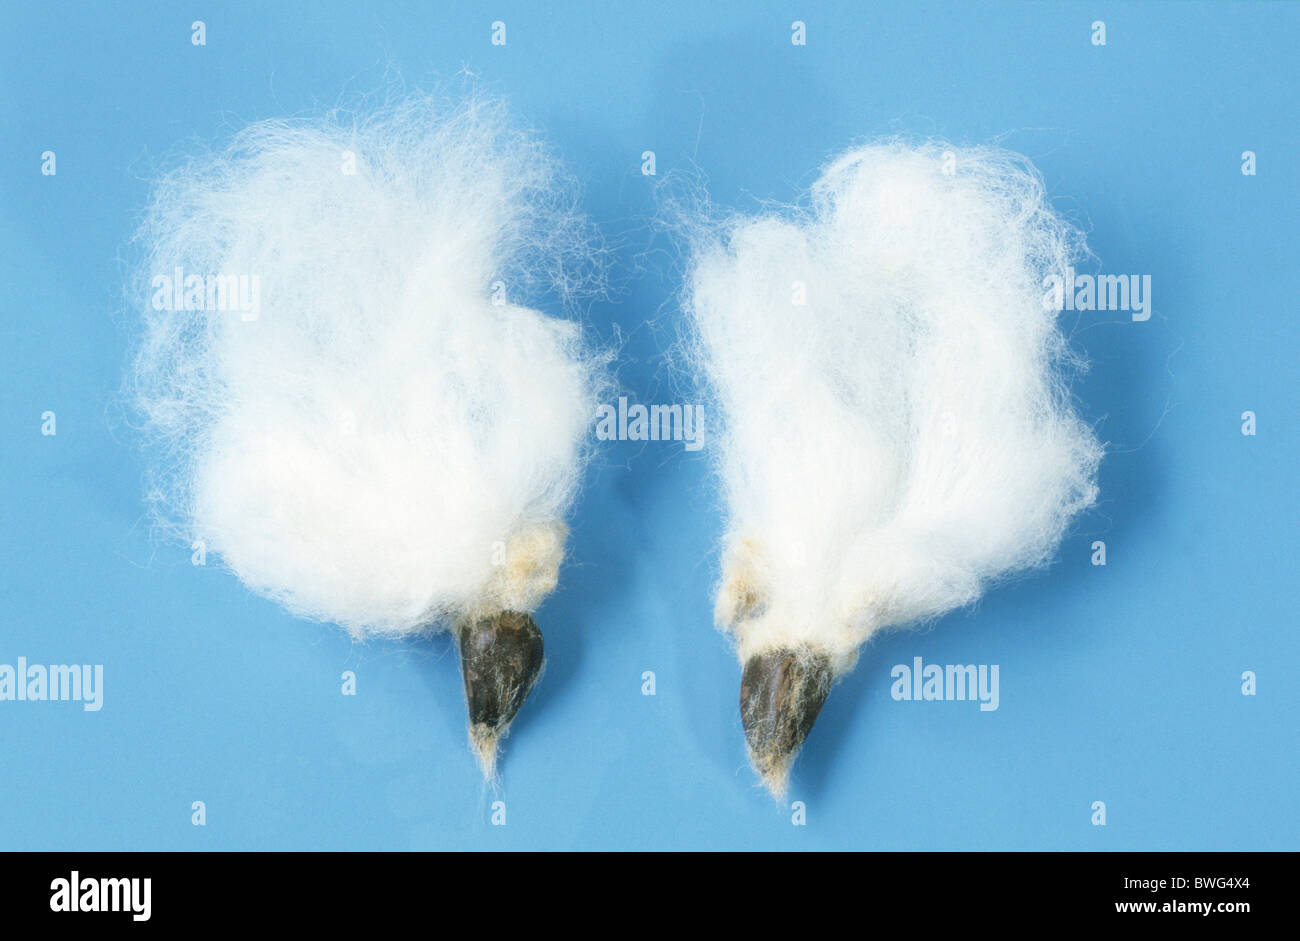 Common Cotton, Levant Cotton (Gossypium herbaceum), fiber, studio picture. Stock Photo